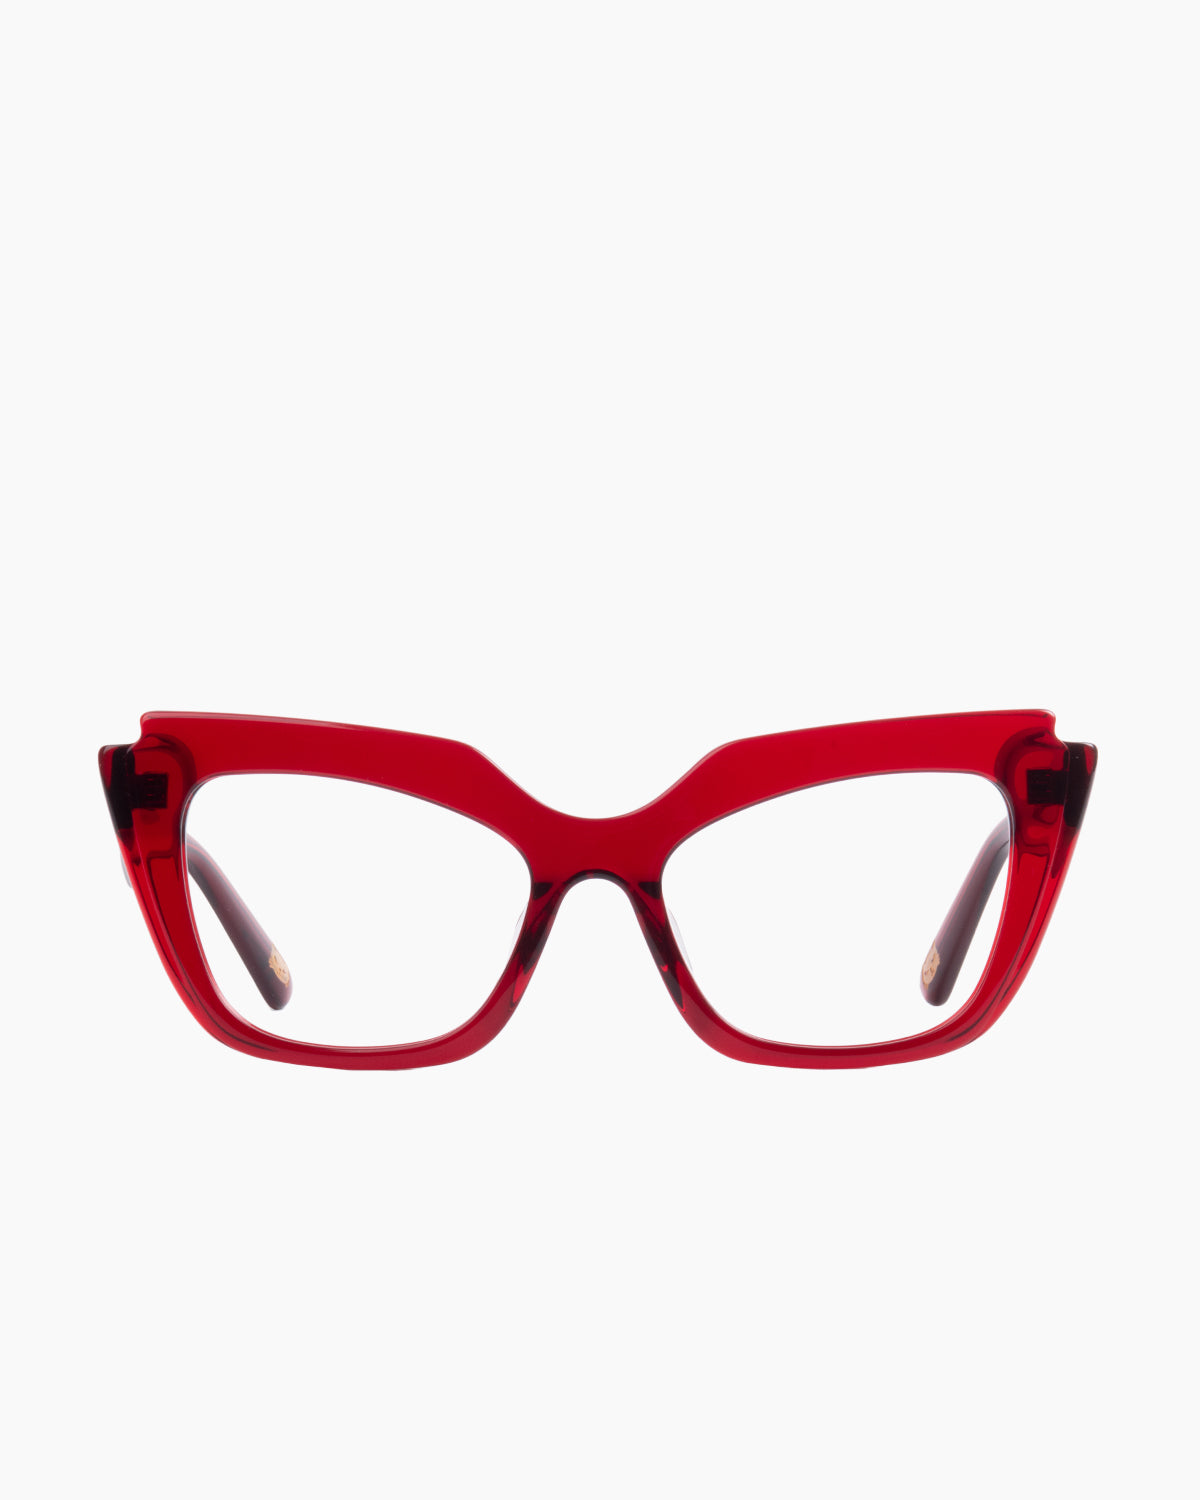 Spectacleeyeworks - parisa - c730 | glasses bar:  Marie-Sophie Dion